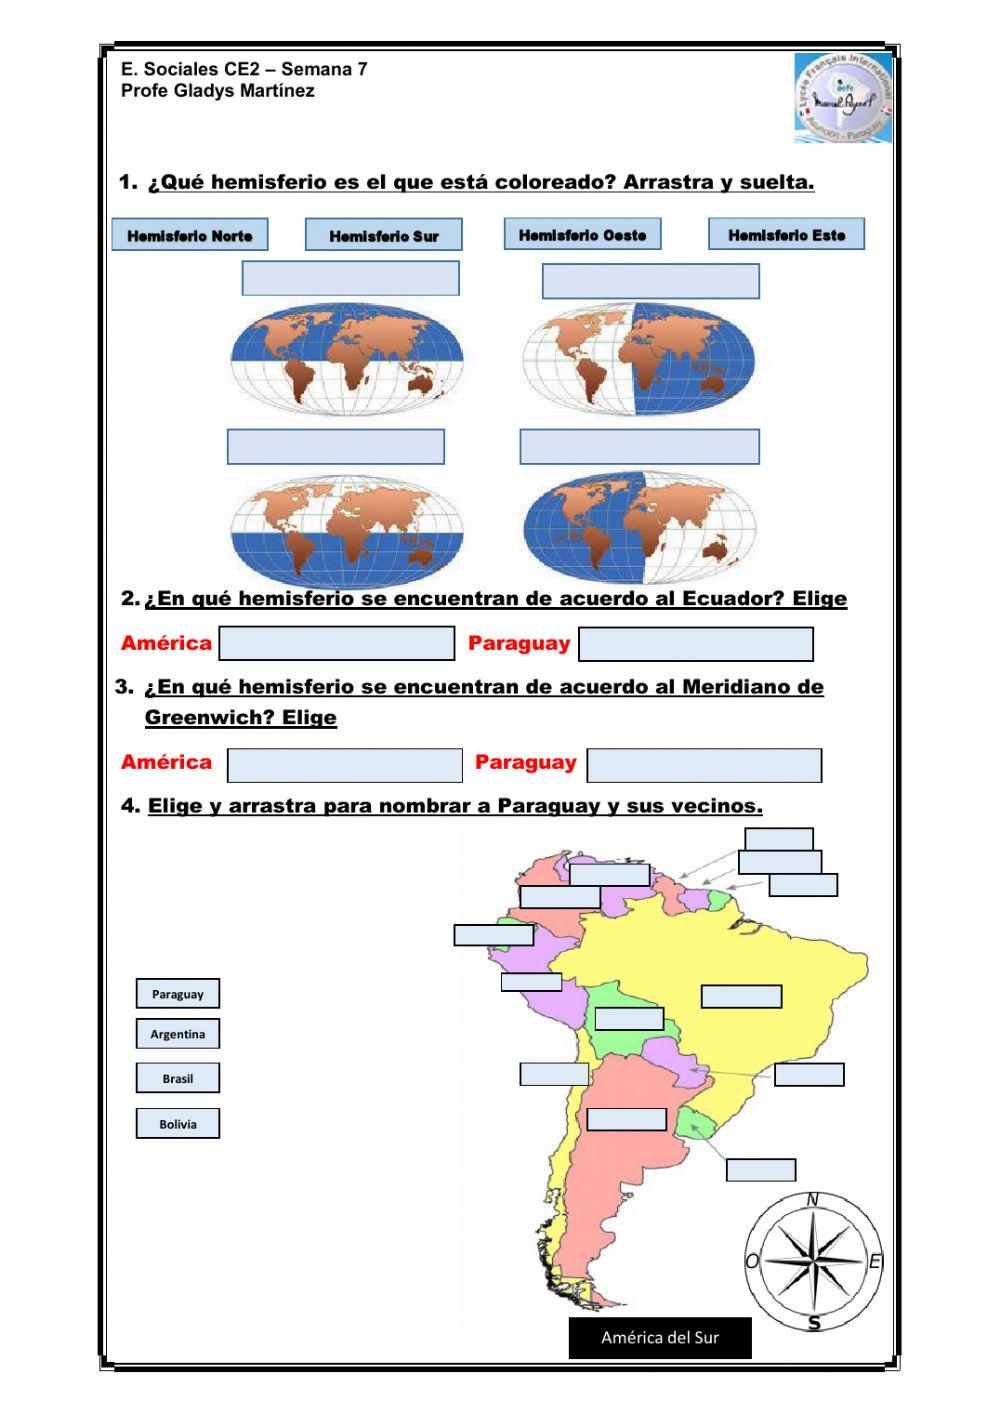 Hemisferios y países vecinos de Paraguay